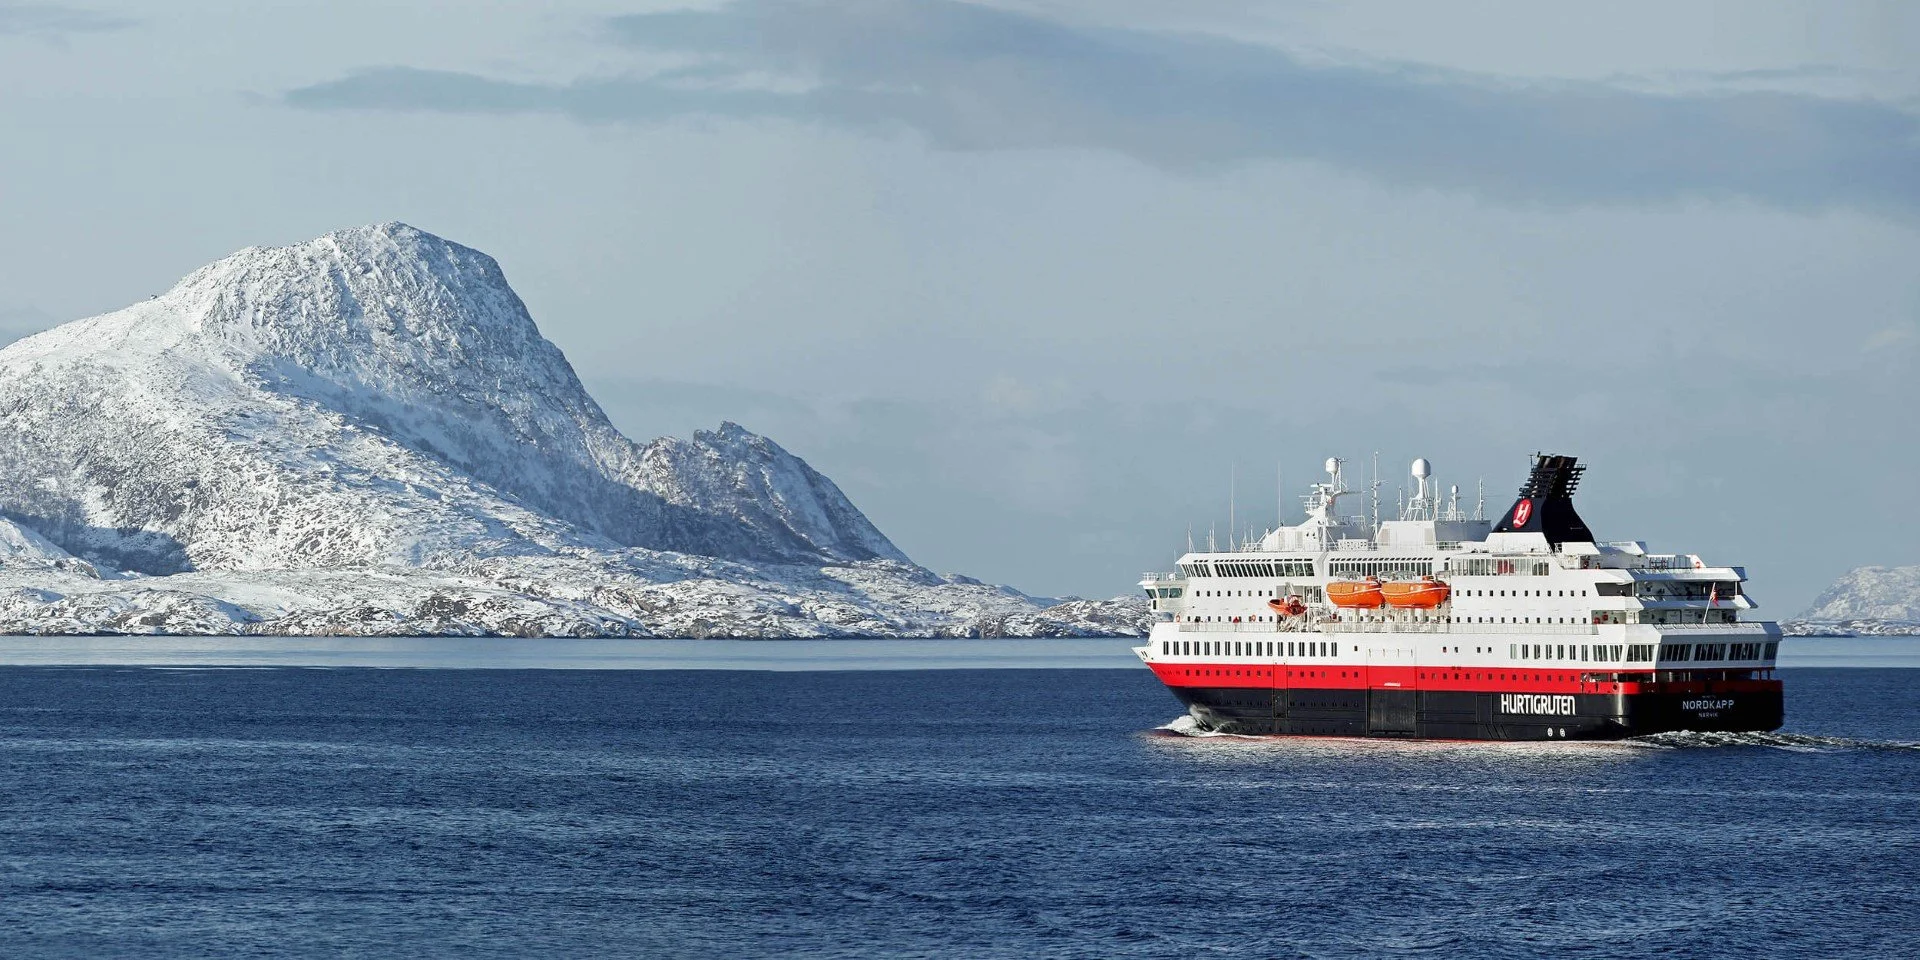 MS Nordkapp at sea in winter